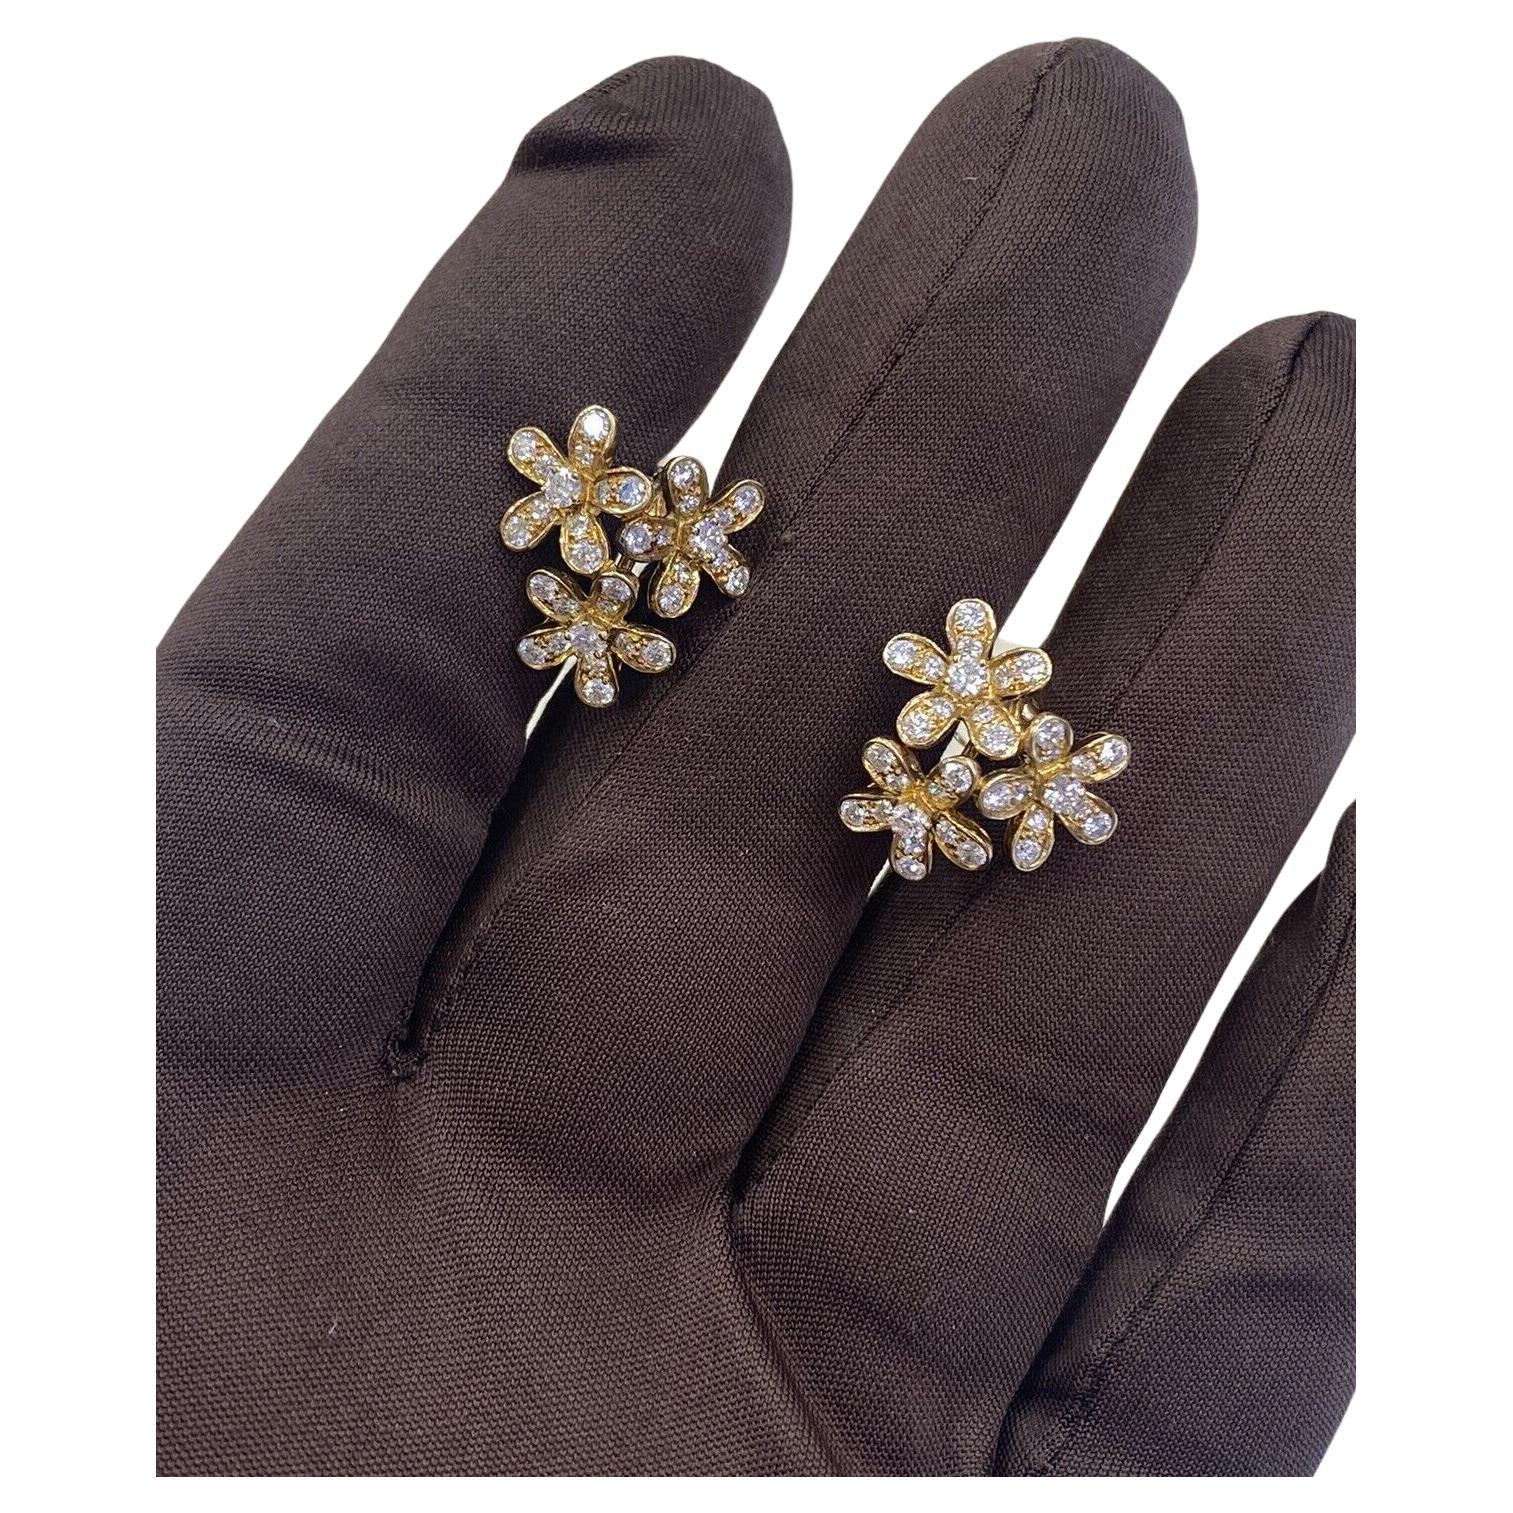 Van Cleef & Arpels 18k Yellow Gold Diamond Flower Socrates Earrings Box/Papers